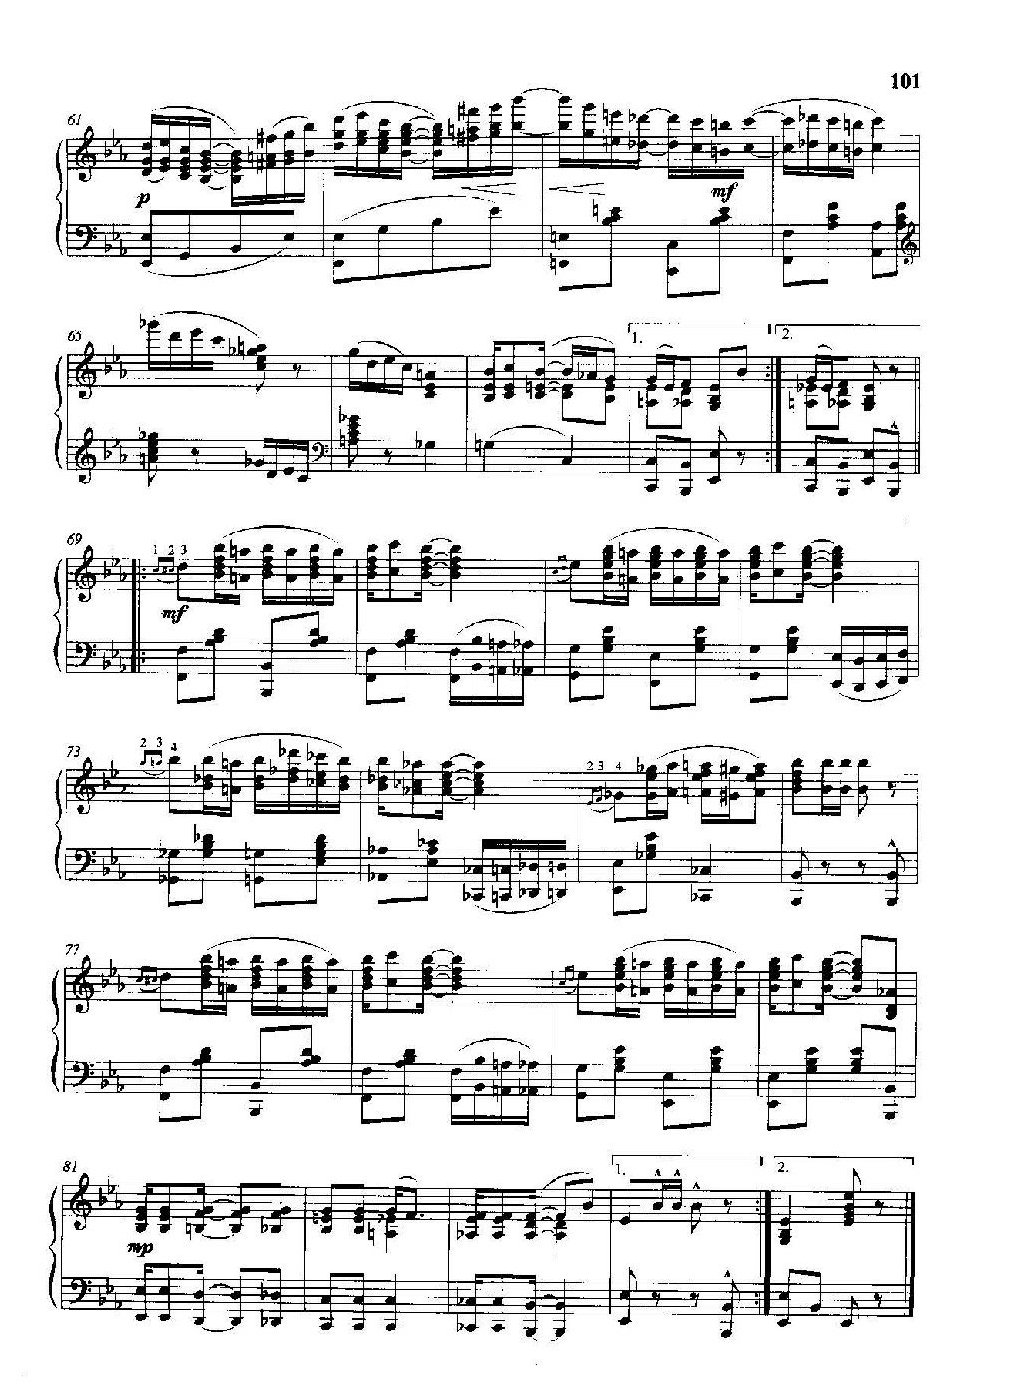 雷格泰姆钢琴乐谱《无花果树叶雷格》雷格泰姆之王斯科特·乔普林